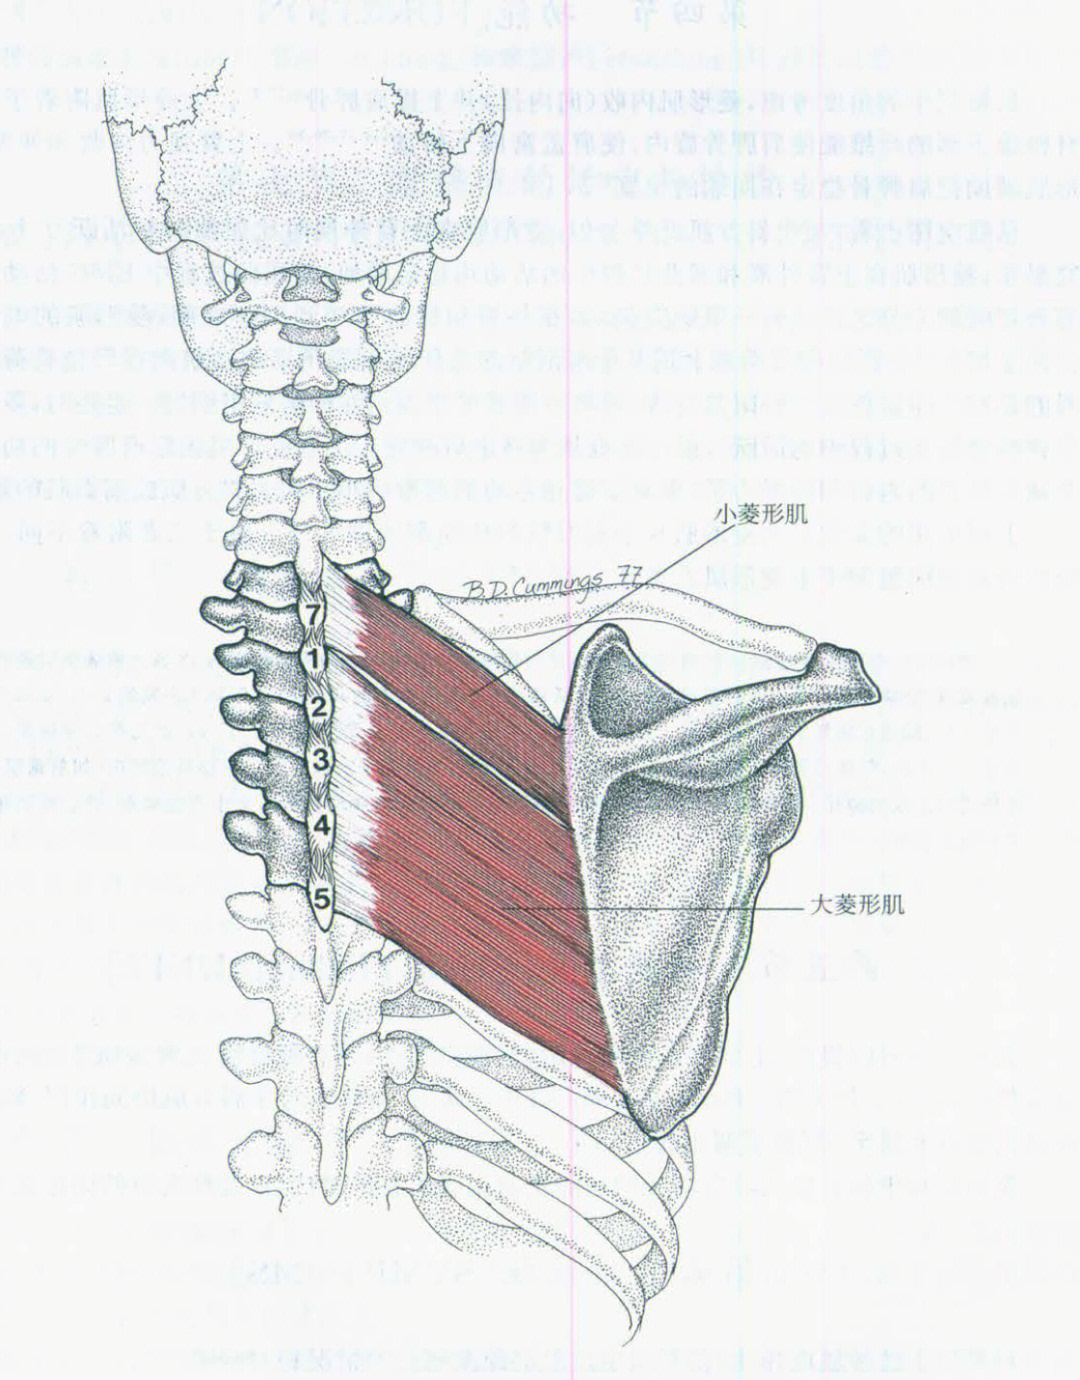 菱形肌竖脊肌图片